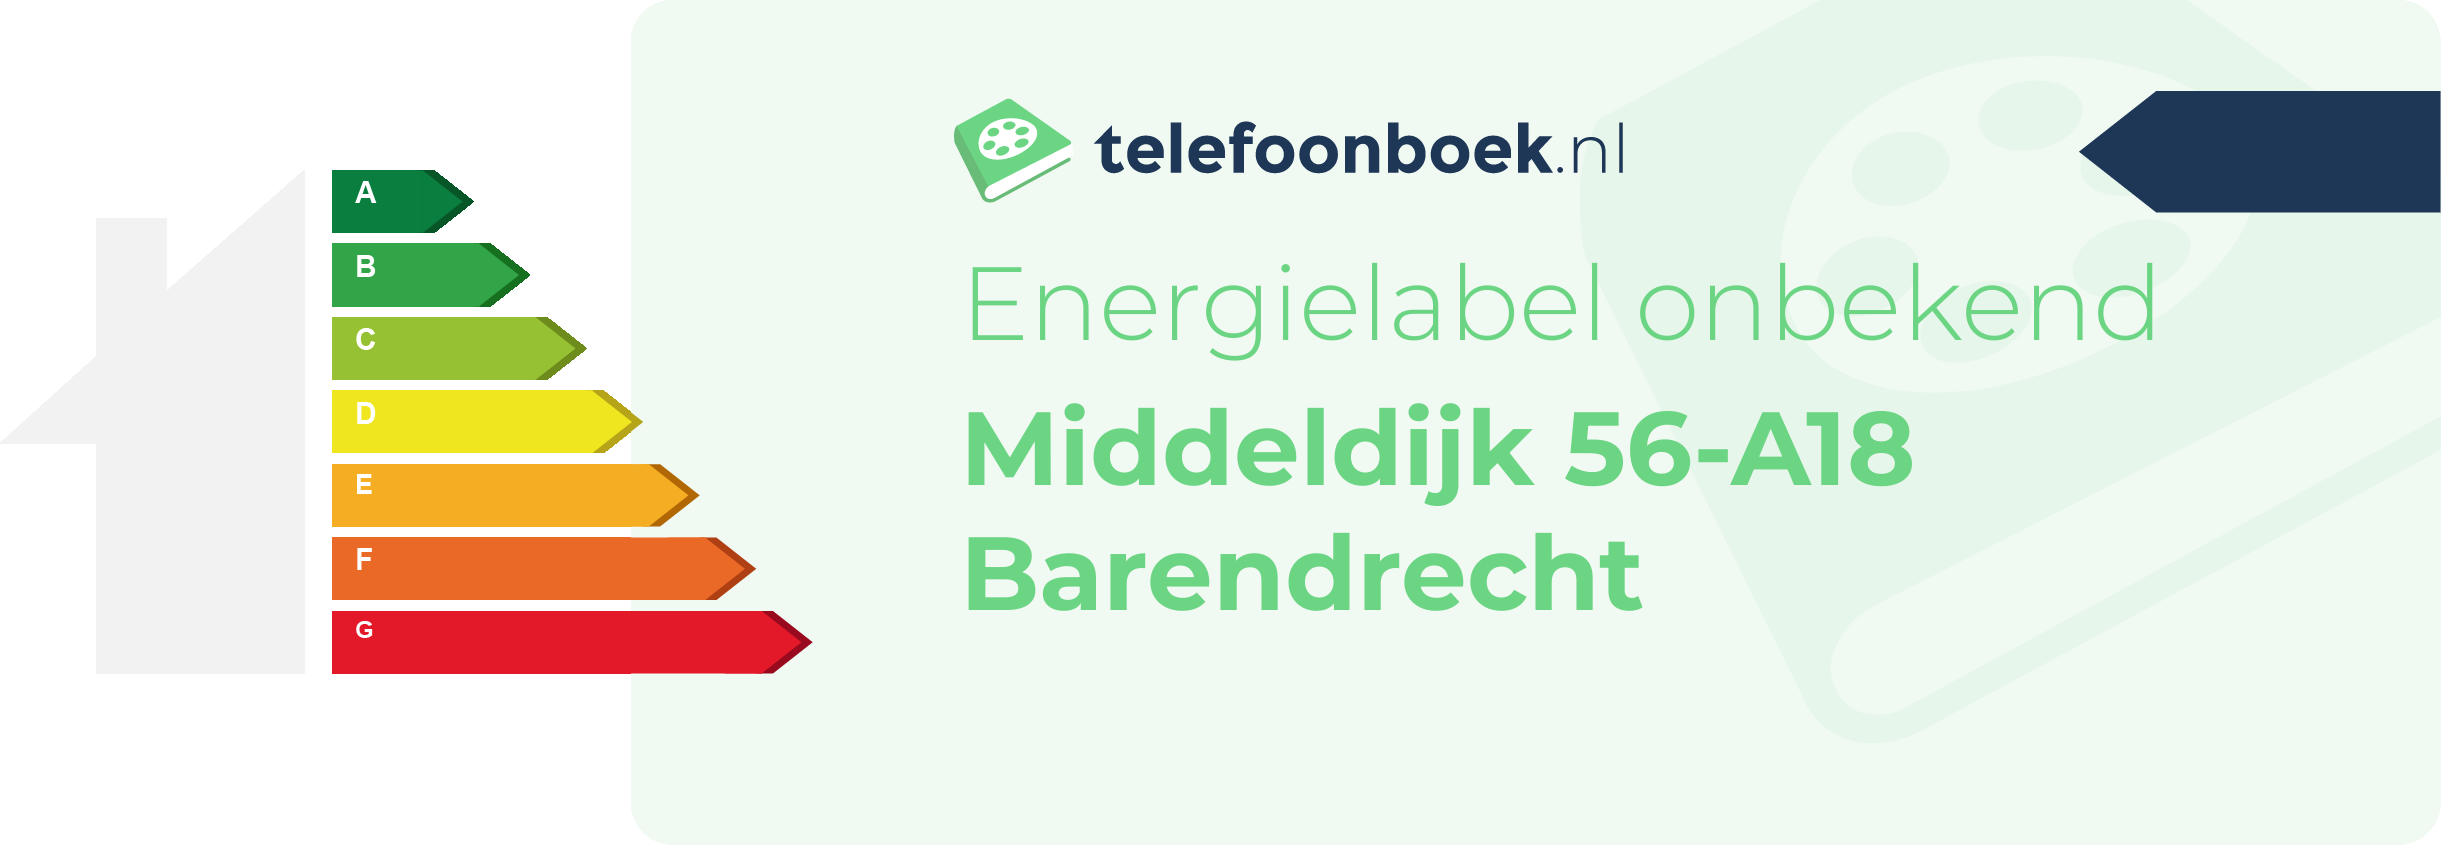 Energielabel Middeldijk 56-A18 Barendrecht